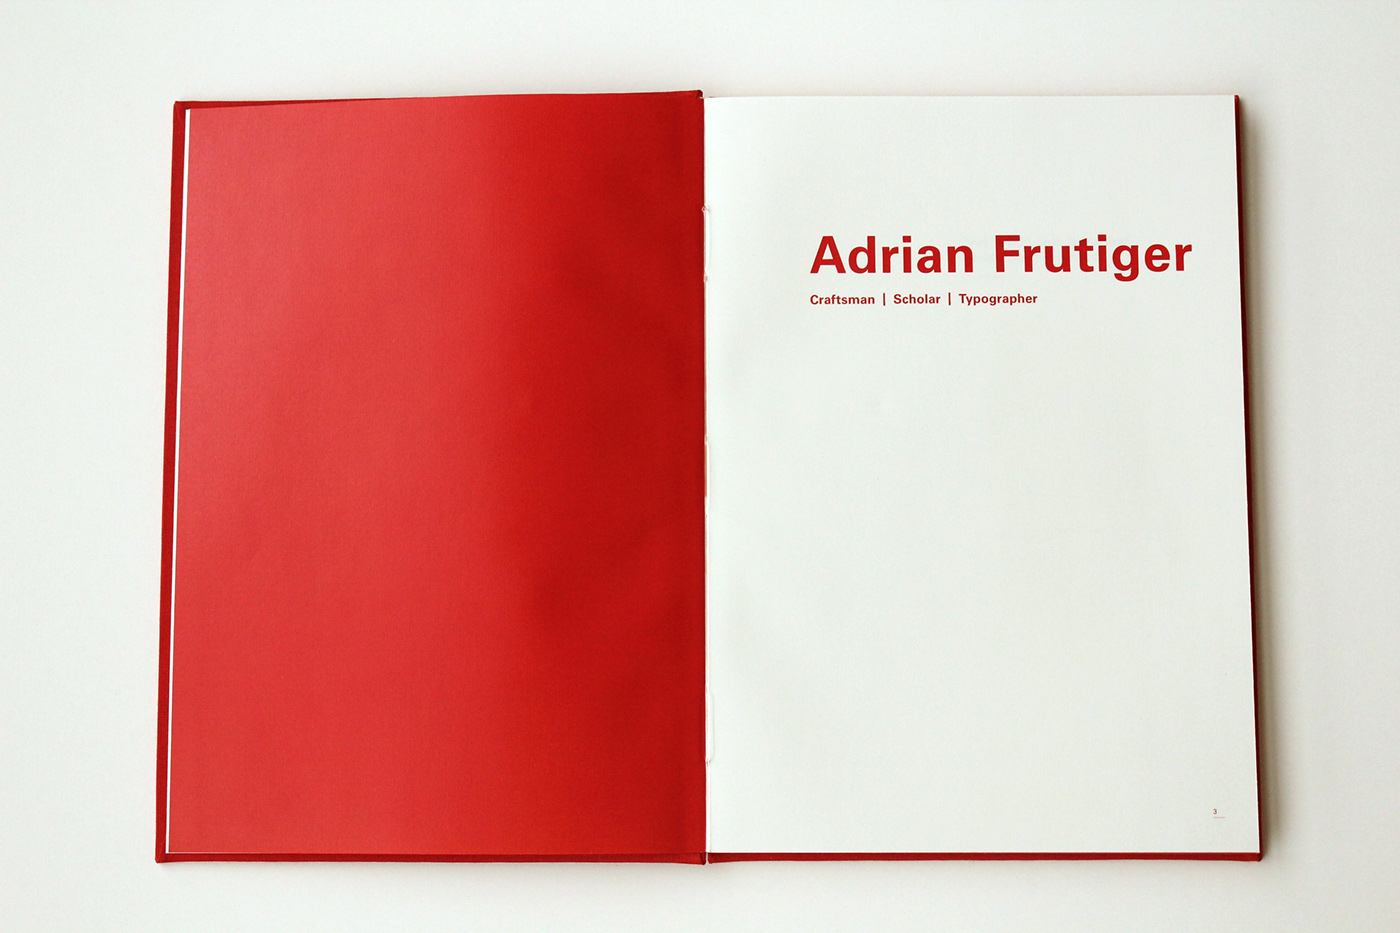 adrian frutiger istd swiss typography craftsmanship type design Bookdesign Layout open spine